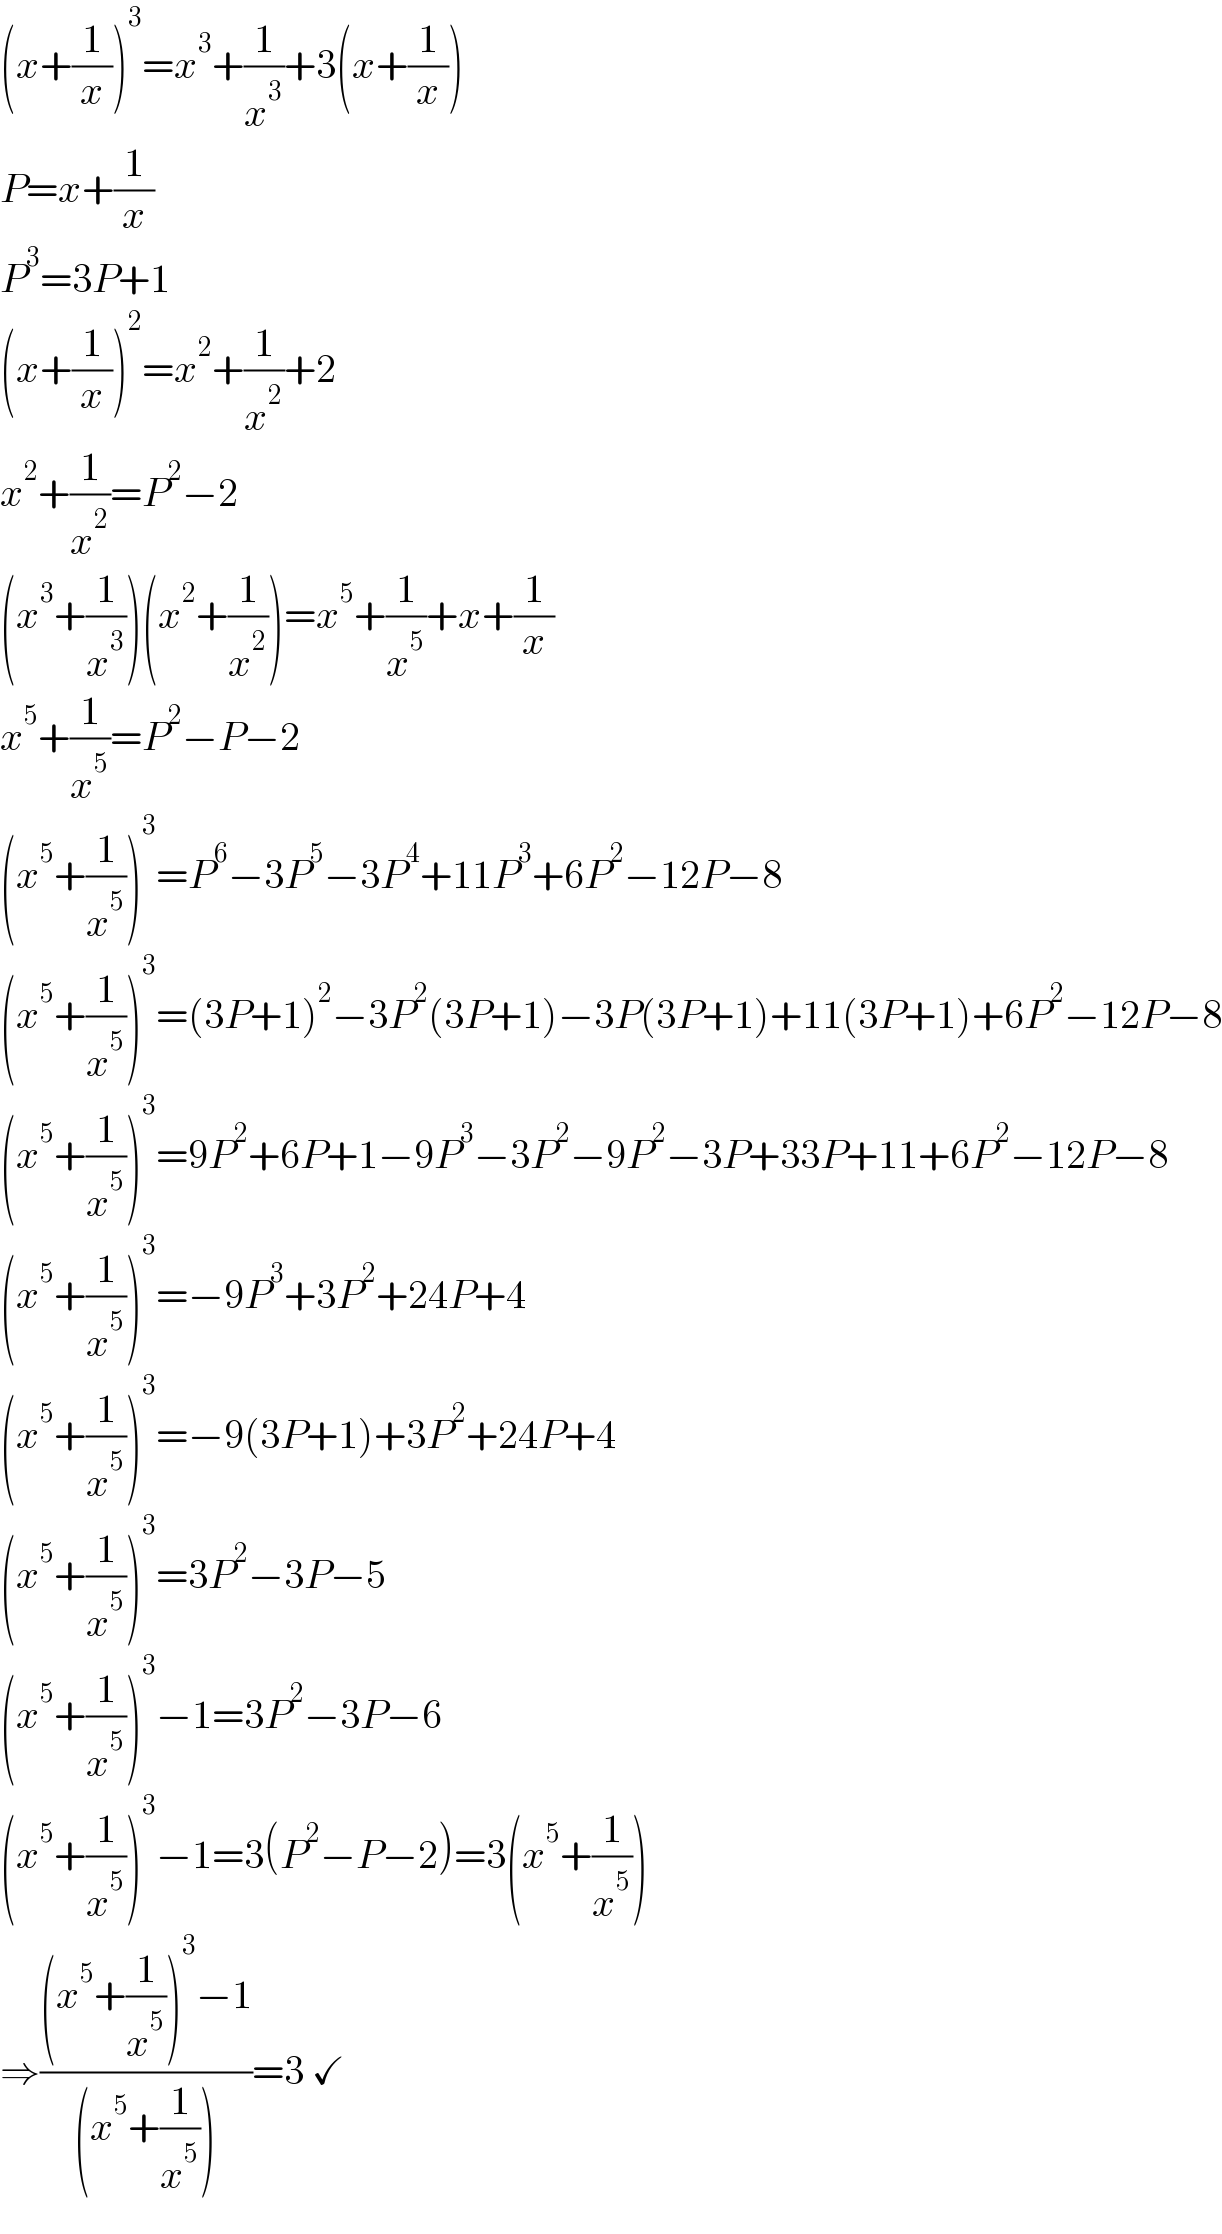 (x+(1/x))^3 =x^3 +(1/x^3 )+3(x+(1/x))  P=x+(1/x)  P^3 =3P+1  (x+(1/x))^2 =x^2 +(1/x^2 )+2  x^2 +(1/x^2 )=P^2 −2  (x^3 +(1/x^3 ))(x^2 +(1/x^2 ))=x^5 +(1/x^5 )+x+(1/x)  x^5 +(1/x^5 )=P^2 −P−2  (x^5 +(1/x^5 ))^3 =P^6 −3P^5 −3P^4 +11P^3 +6P^2 −12P−8  (x^5 +(1/x^5 ))^3 =(3P+1)^2 −3P^2 (3P+1)−3P(3P+1)+11(3P+1)+6P^2 −12P−8  (x^5 +(1/x^5 ))^3 =9P^2 +6P+1−9P^3 −3P^2 −9P^2 −3P+33P+11+6P^2 −12P−8  (x^5 +(1/x^5 ))^3 =−9P^3 +3P^2 +24P+4  (x^5 +(1/x^5 ))^3 =−9(3P+1)+3P^2 +24P+4  (x^5 +(1/x^5 ))^3 =3P^2 −3P−5  (x^5 +(1/x^5 ))^3 −1=3P^2 −3P−6  (x^5 +(1/x^5 ))^3 −1=3(P^2 −P−2)=3(x^5 +(1/x^5 ))  ⇒(((x^5 +(1/x^5 ))^3 −1)/((x^5 +(1/x^5 ))))=3 ✓  